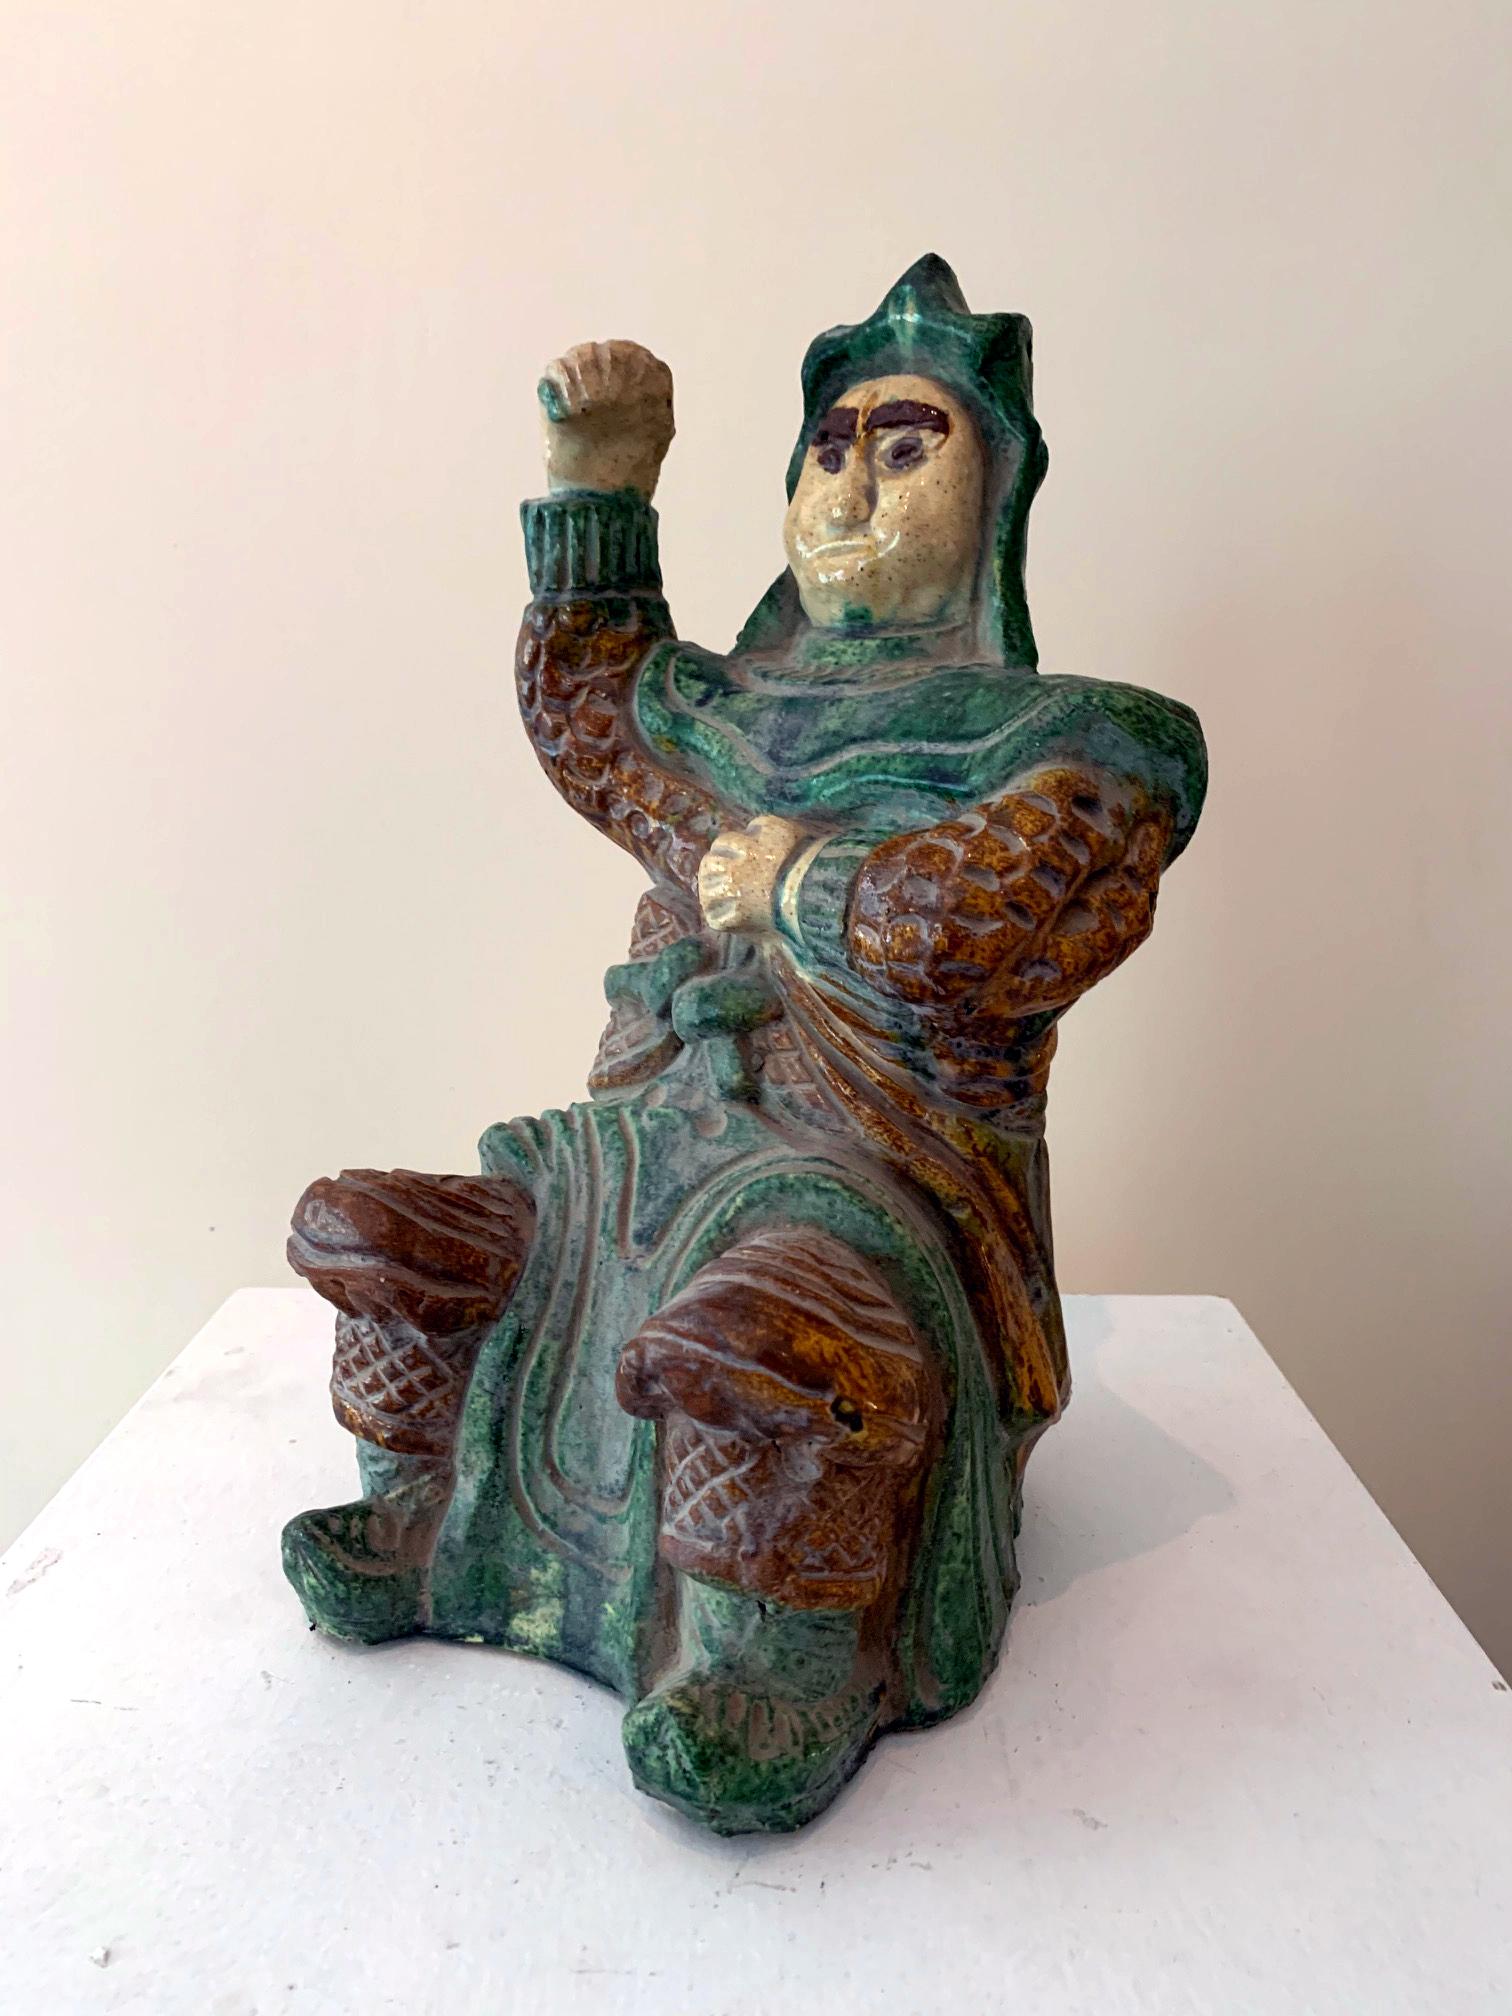 Eine Steinzeugfigur, die einen sitzenden, gepanzerten Krieger in eindrucksvoller Pose darstellt, ca. 15. bis 17. Er ist wahrscheinlich einer der vier himmlischen Könige, der in China weithin verehrten Schutzmänner. Die Figur wurde in mühevoller